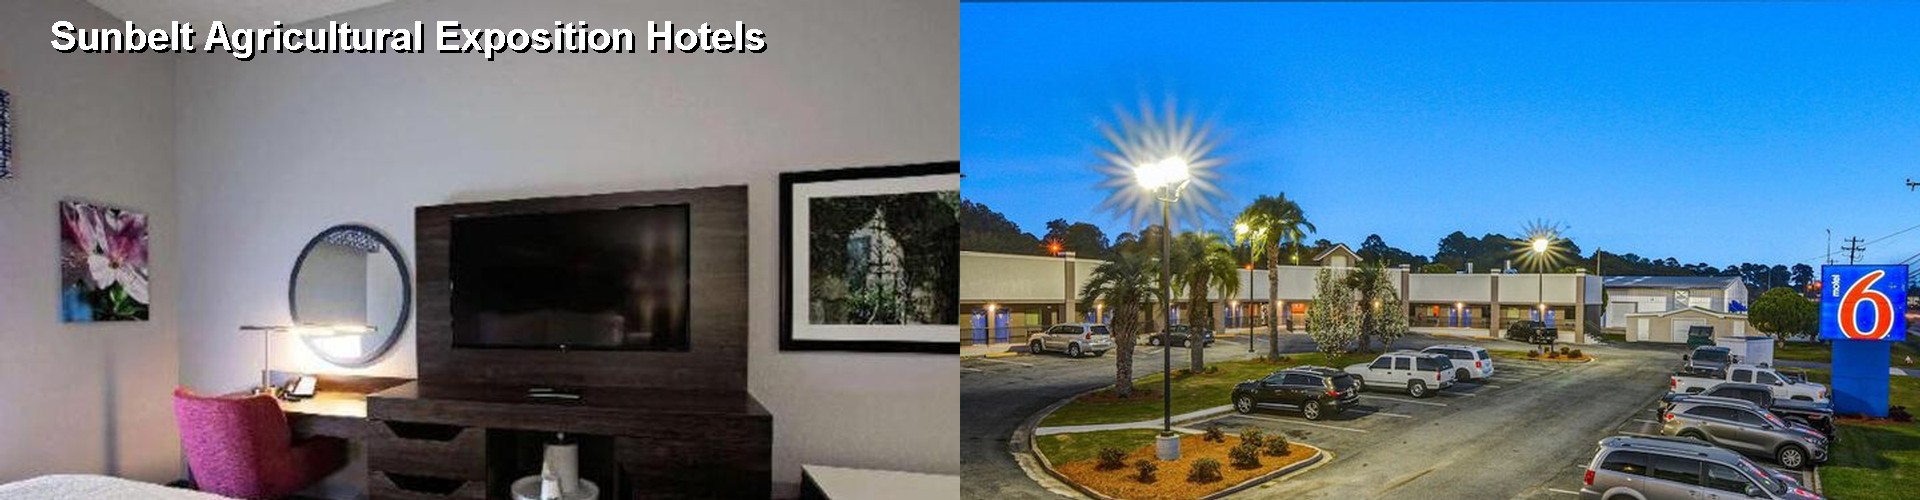 3 Best Hotels near Sunbelt Agricultural Exposition